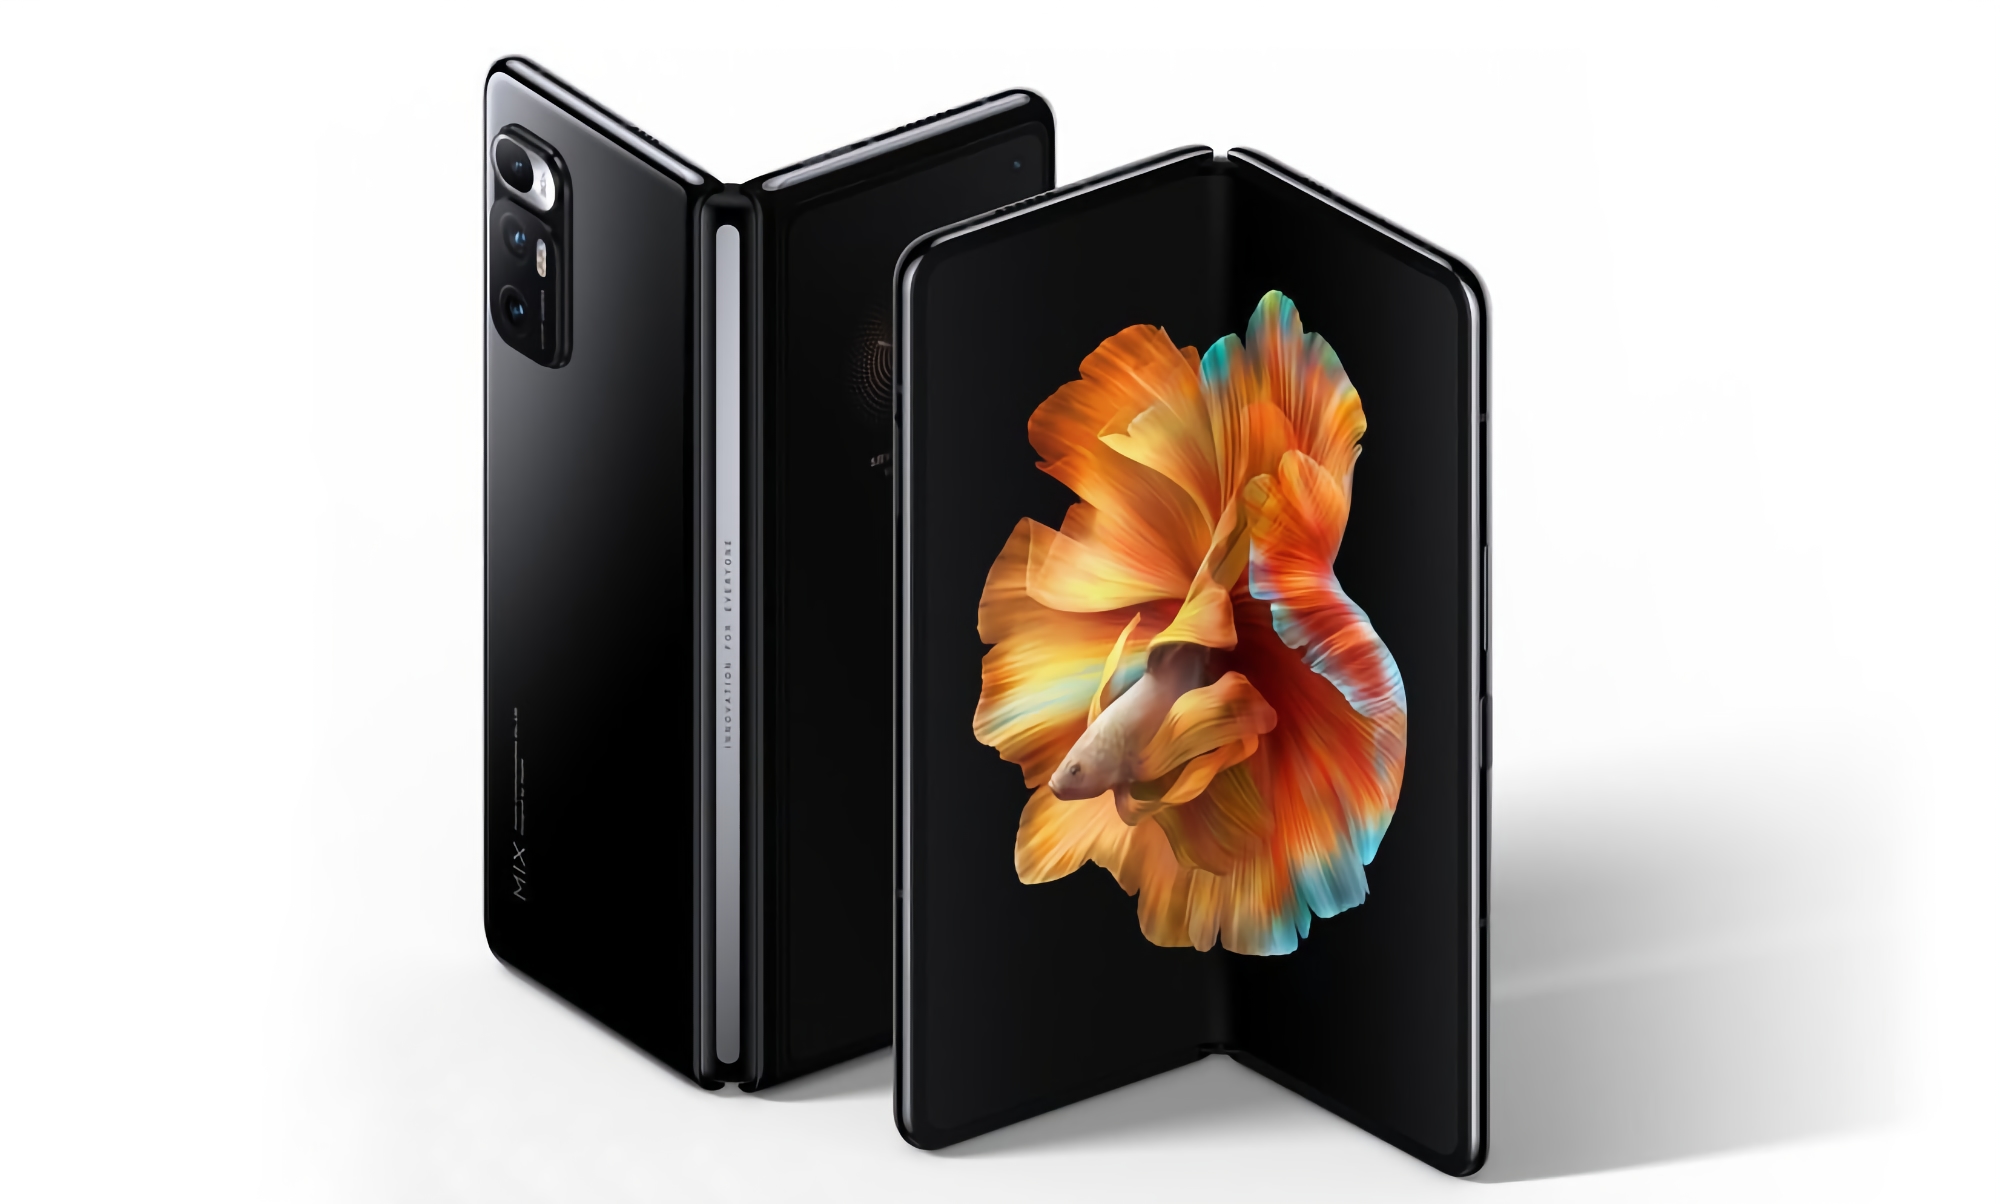 8-calowy ekran i układ Snapdragon 8 Gen 1: wtajemniczony powiedział, jak będzie wyglądał składany smartfon Xiaomi MIX Fold 2